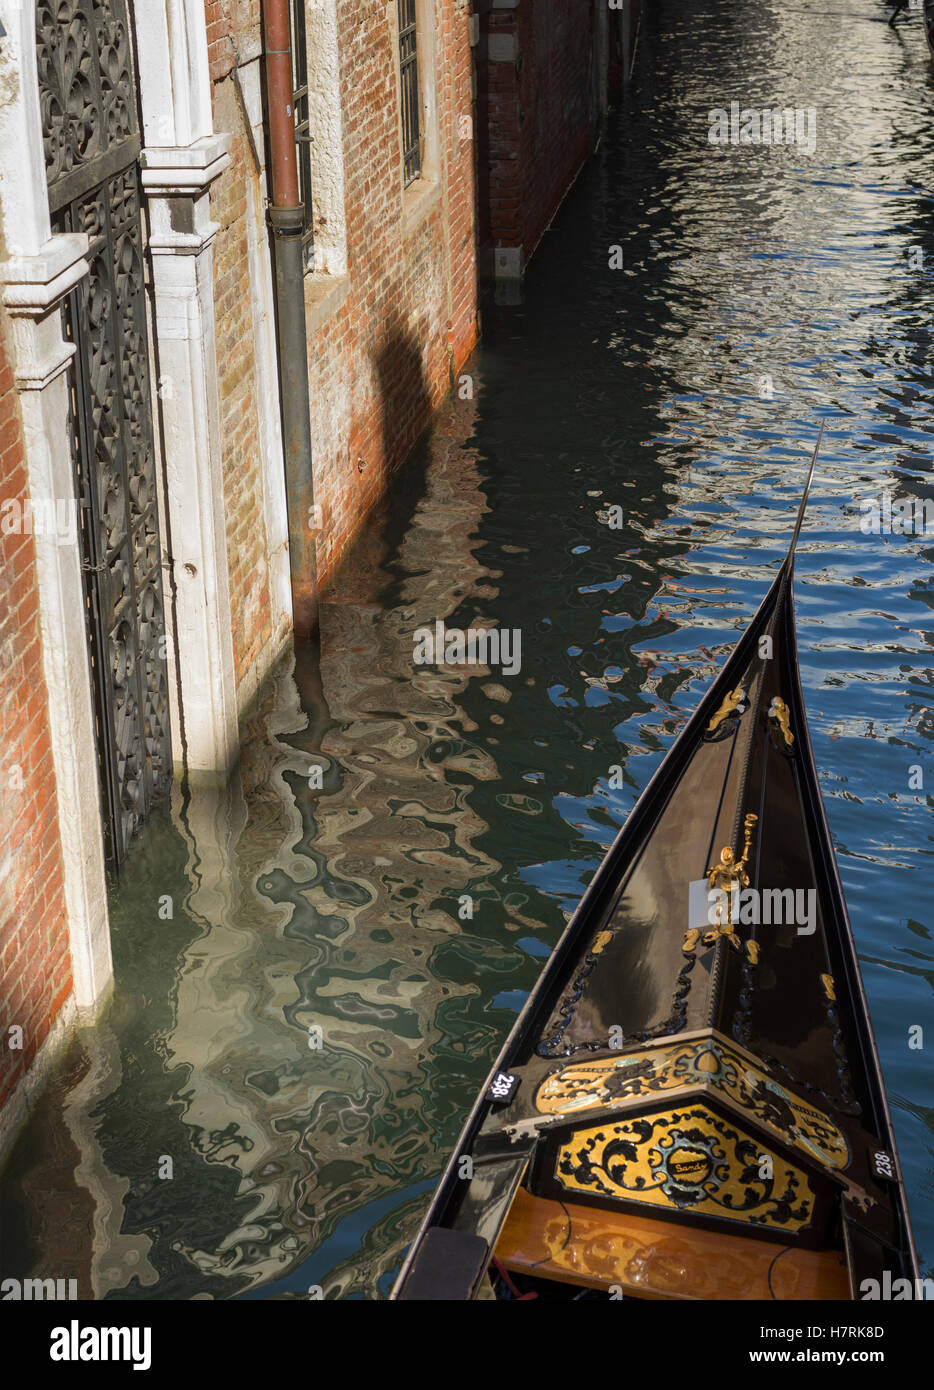 Prua di una gondola in un canale accanto a un muro di mattoni; Venezia, Italia Foto Stock